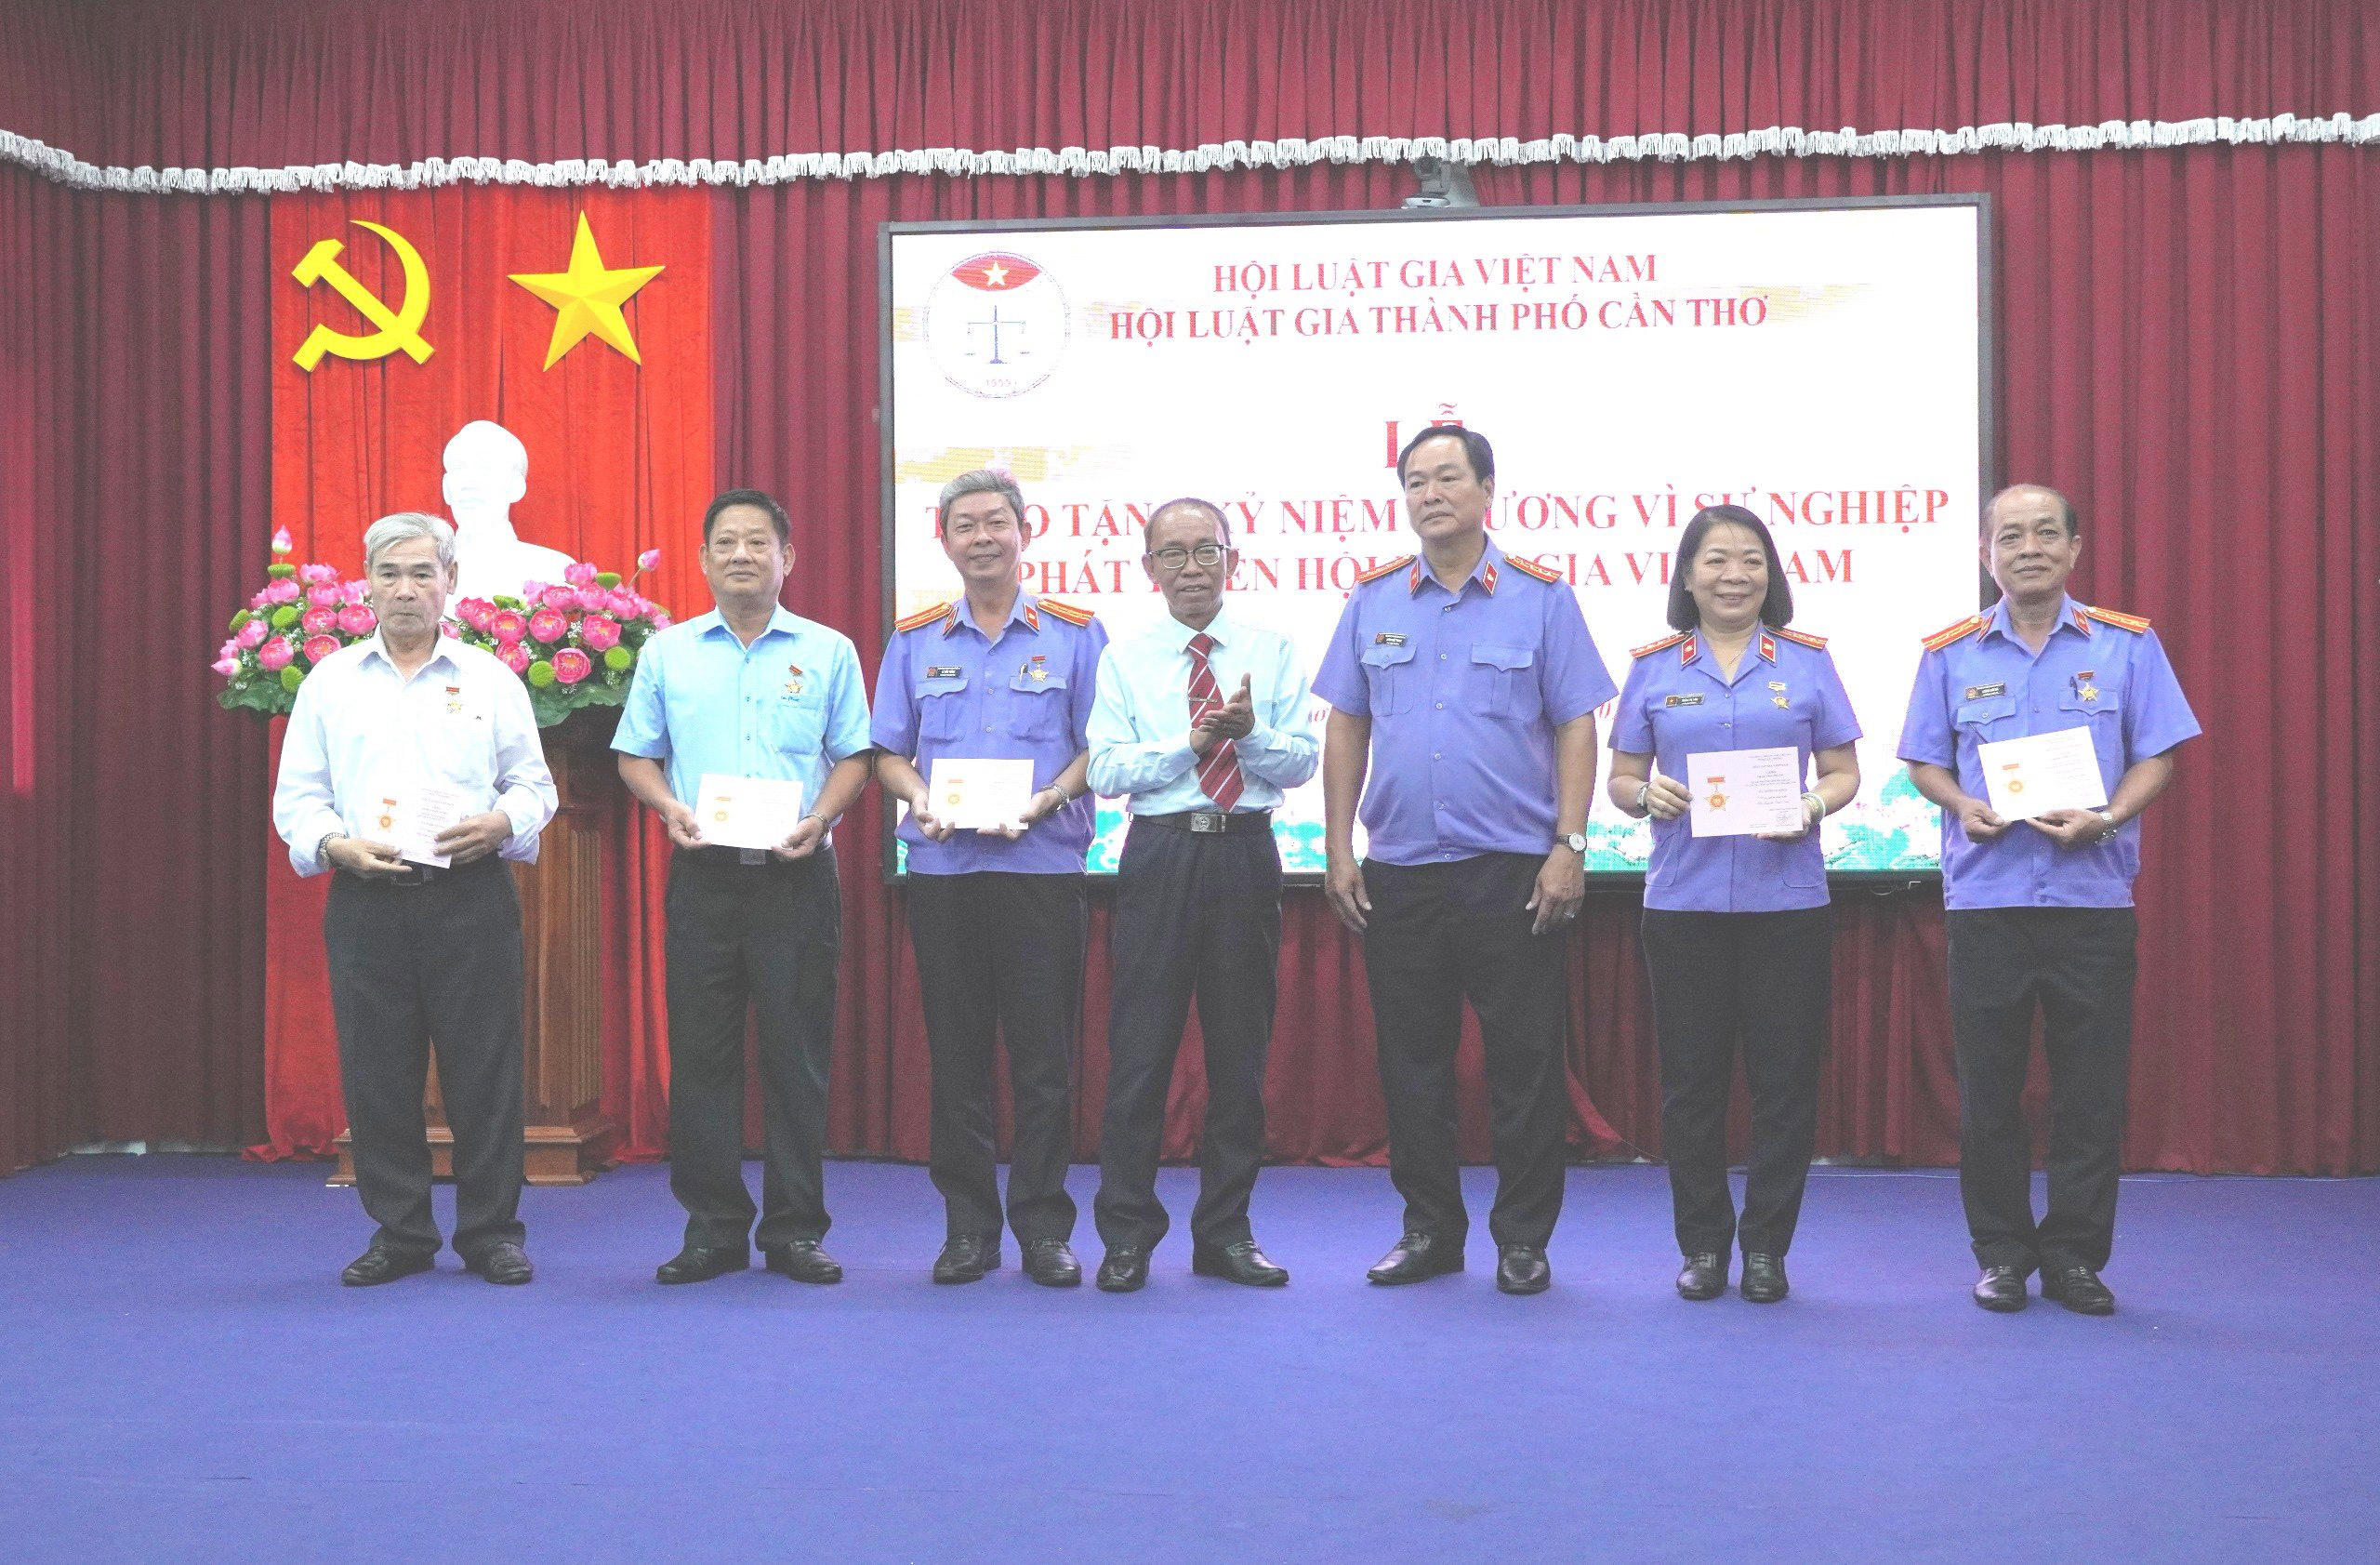 Hội Luật gia thành phố Cần Thơ tổ chức trao tặng Kỷ niệm chương “Vì sự nghiệp phát triển Hội Luật gia Việt Nam”